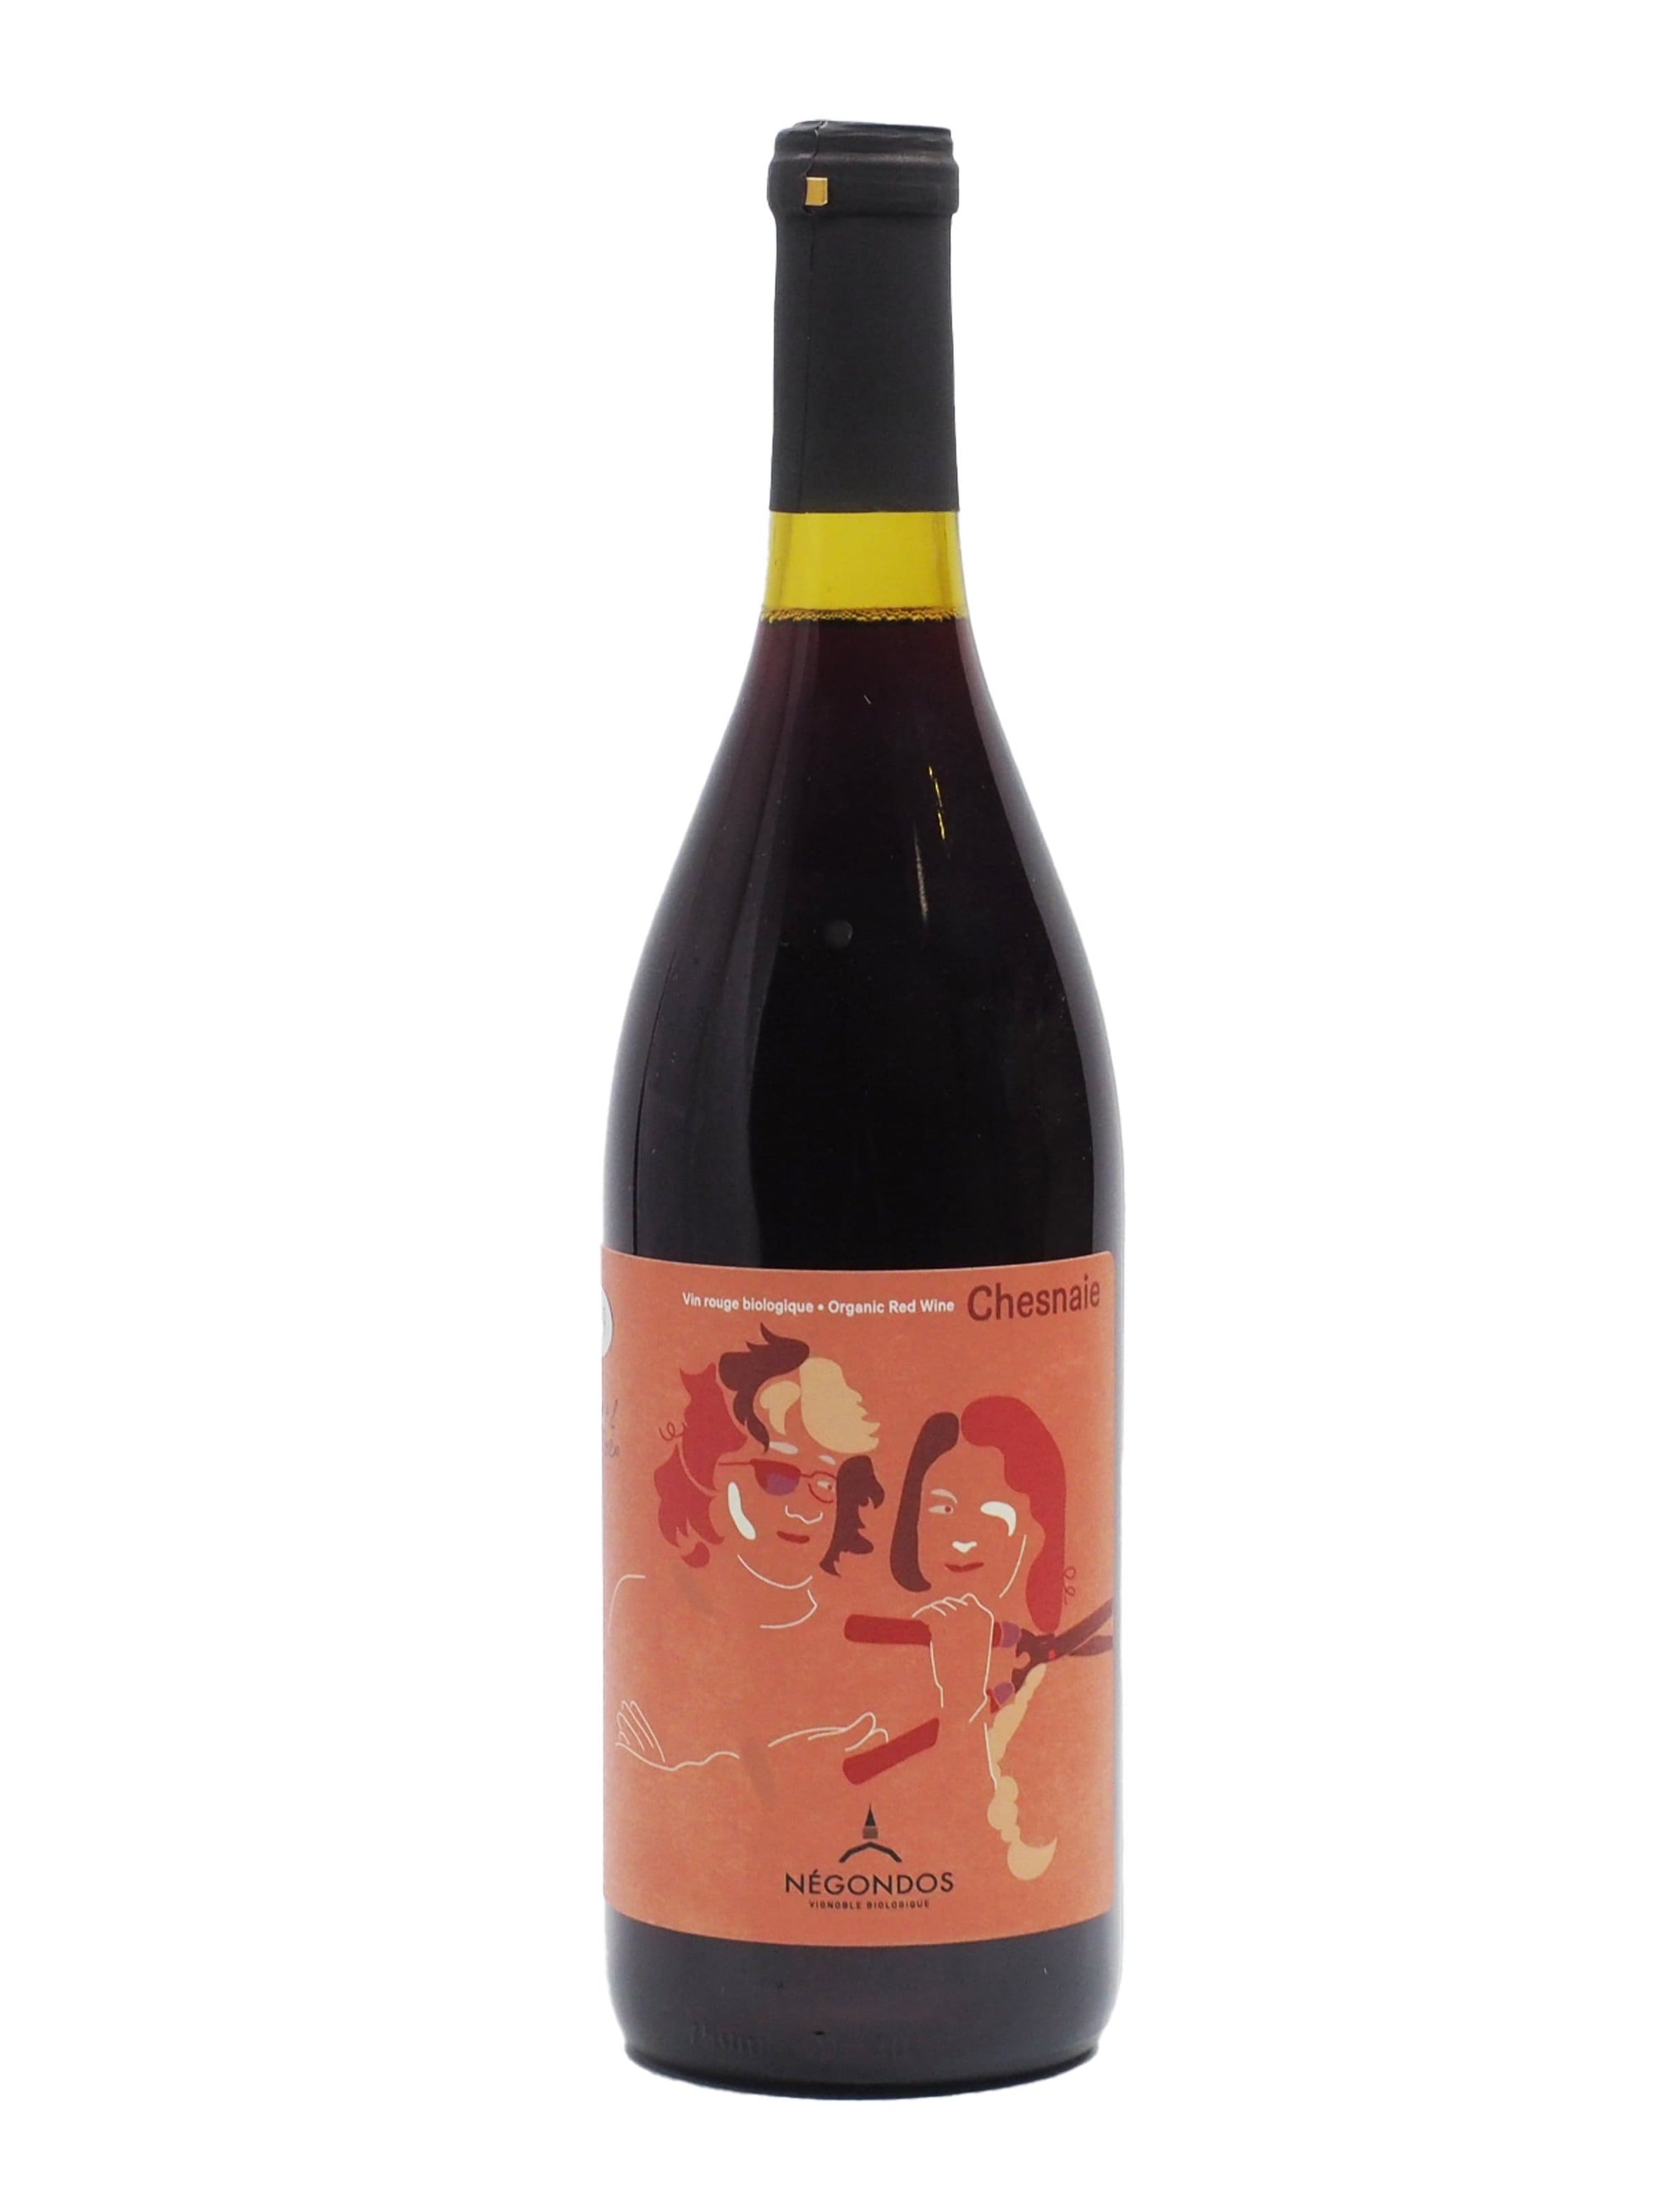 Vignoble Biologique Négondos Chesnaie - Vin rouge du Vignoble Biologique Négondos